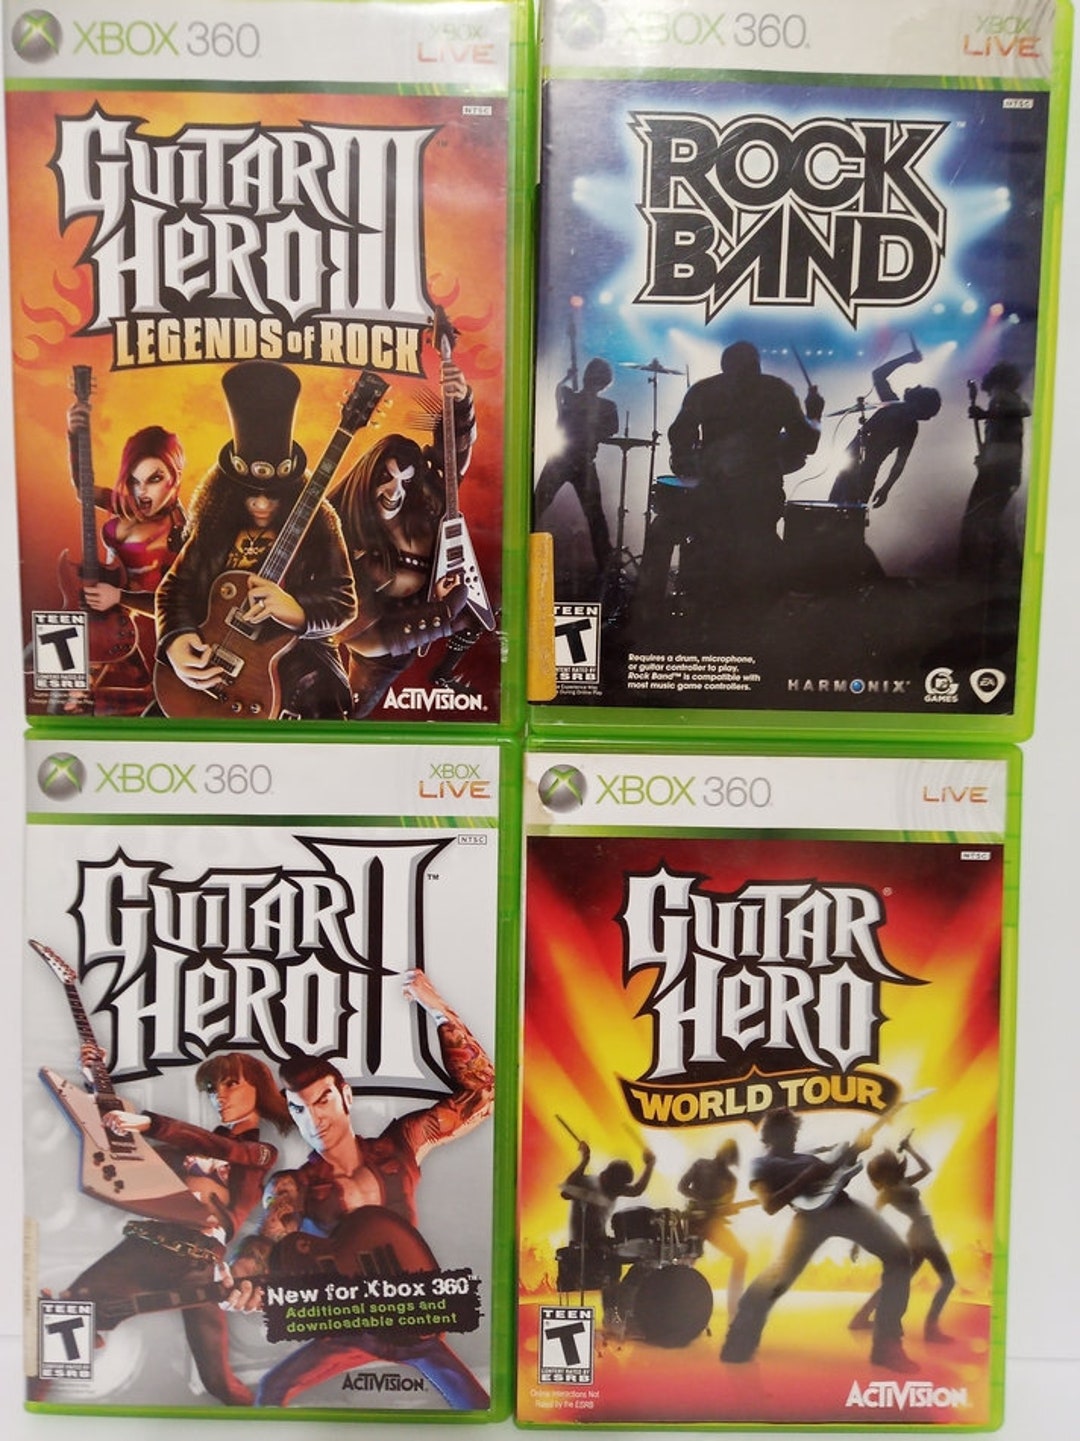 Guitar Hero set. 1 Drum, 2 Guitar, 1 Microphone, Video Gaming